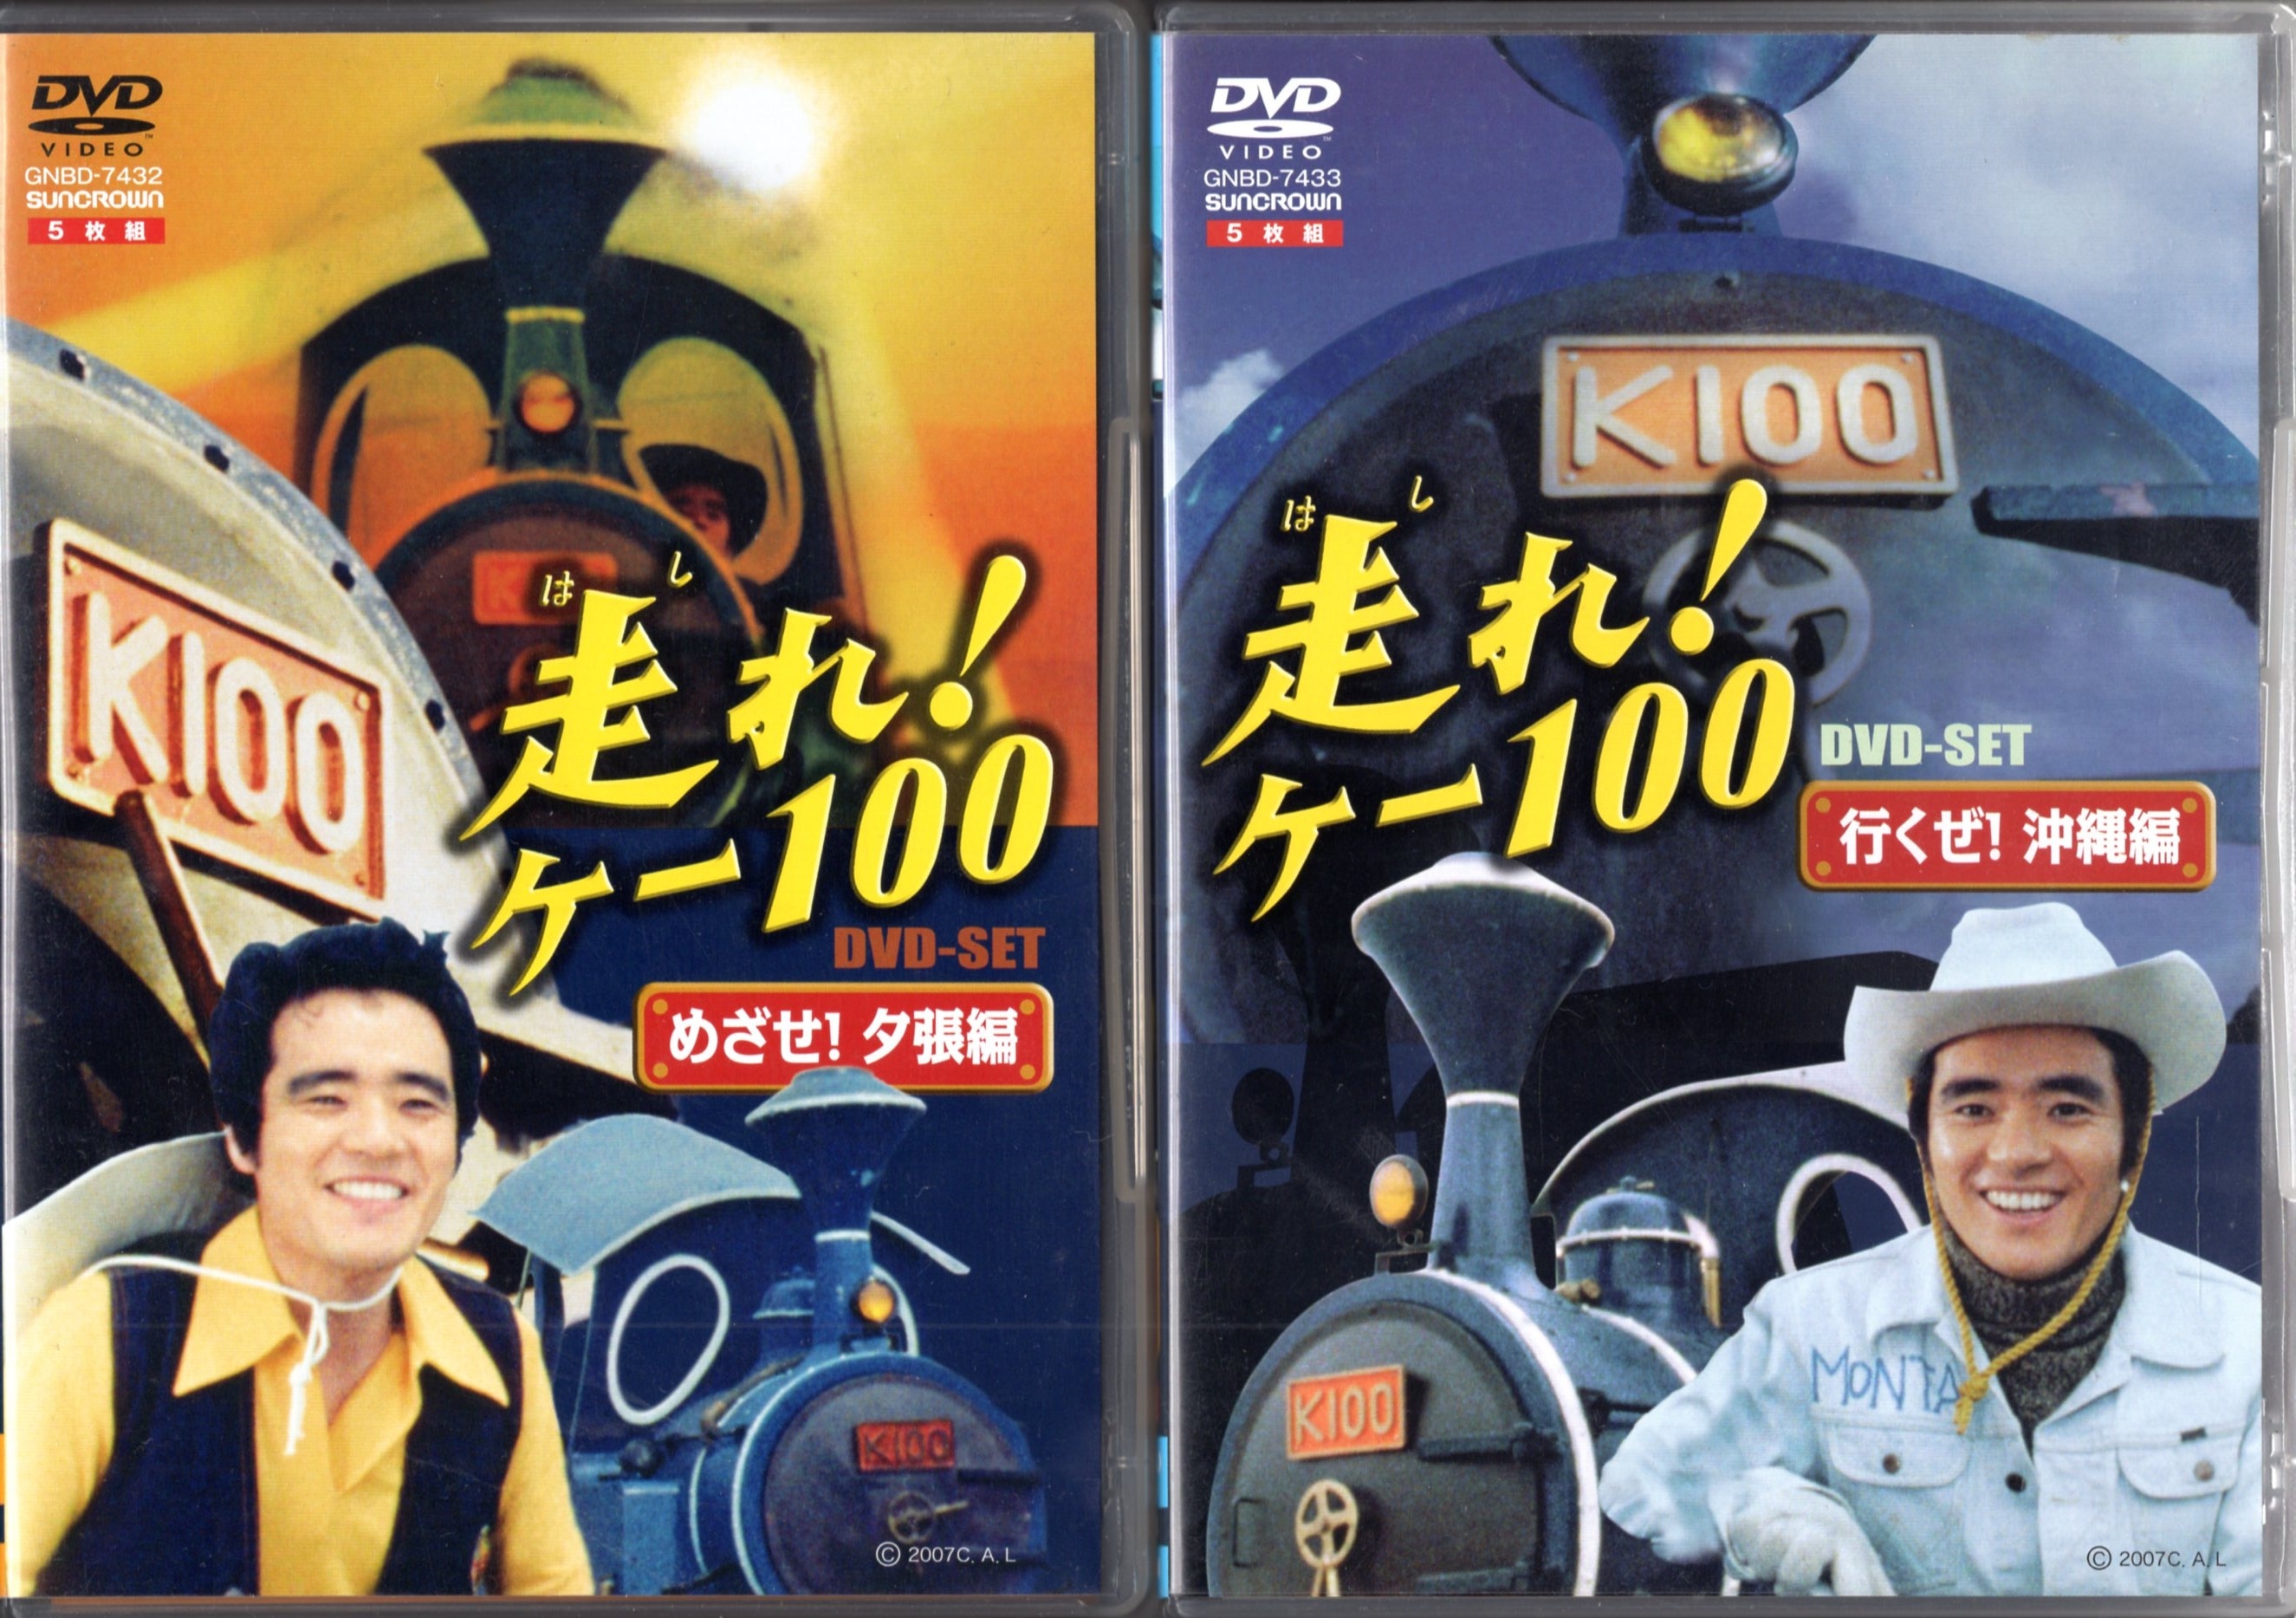 走れ!ケー100 DVD-SET めざせ!夕張編 - DVD